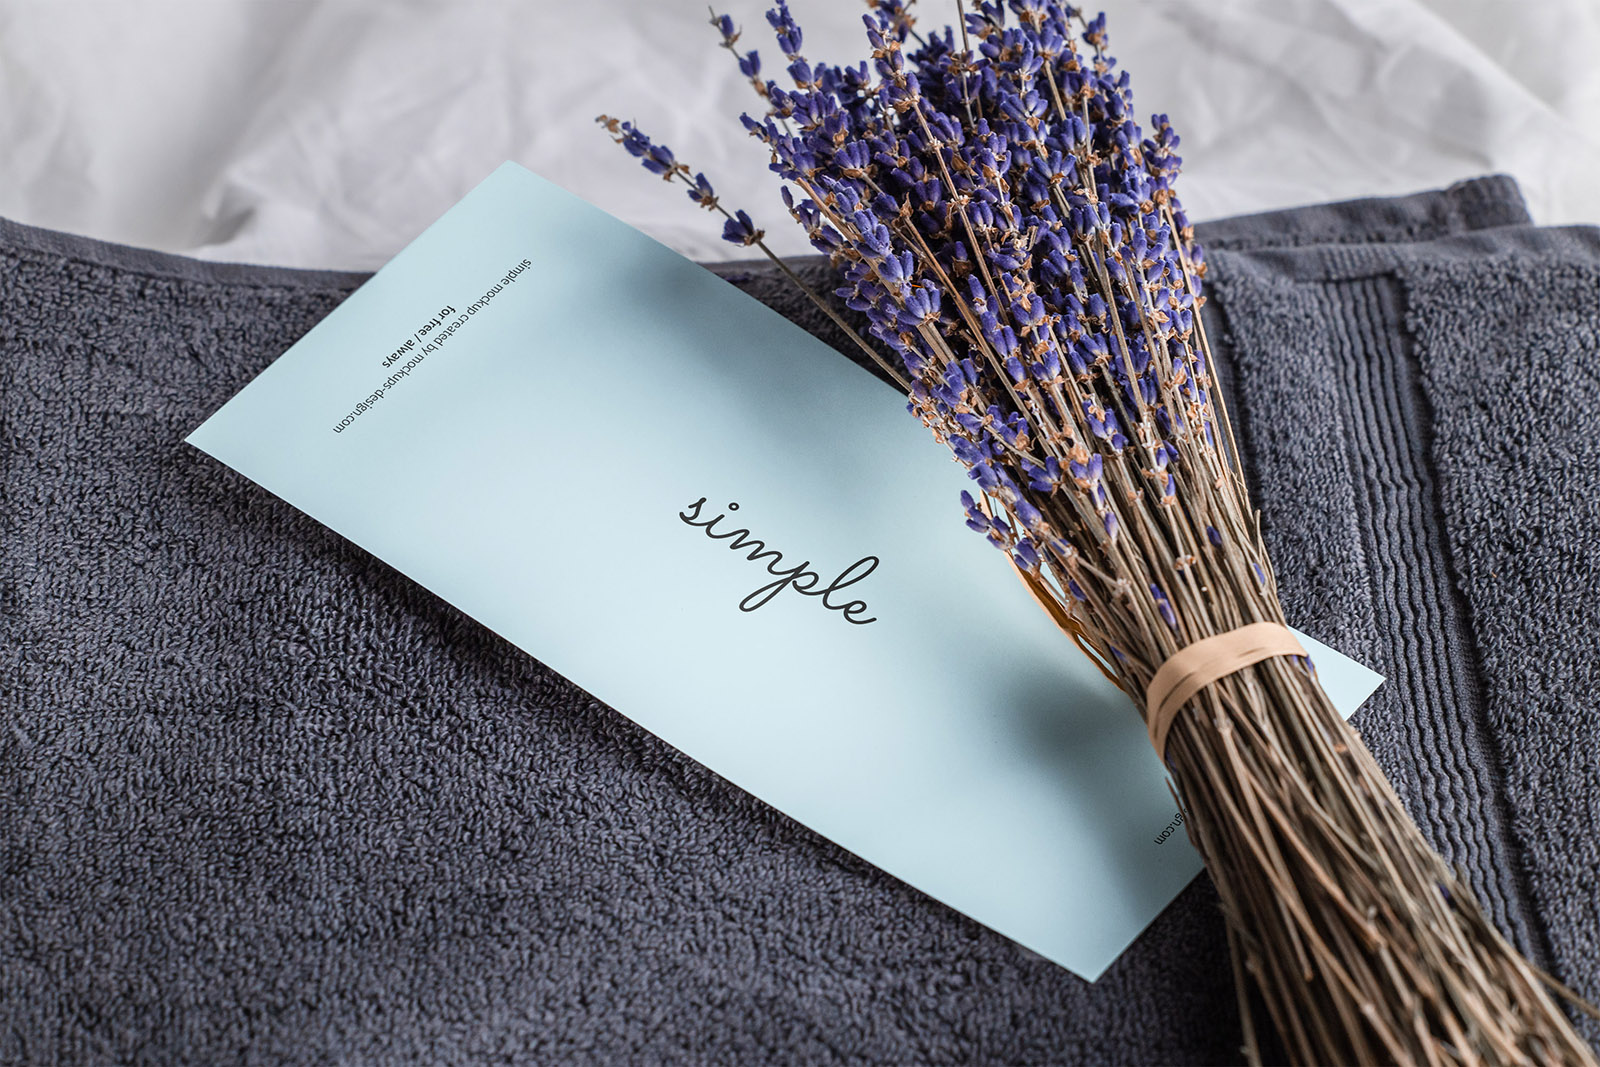 DL flyer on towel with lavender mockup